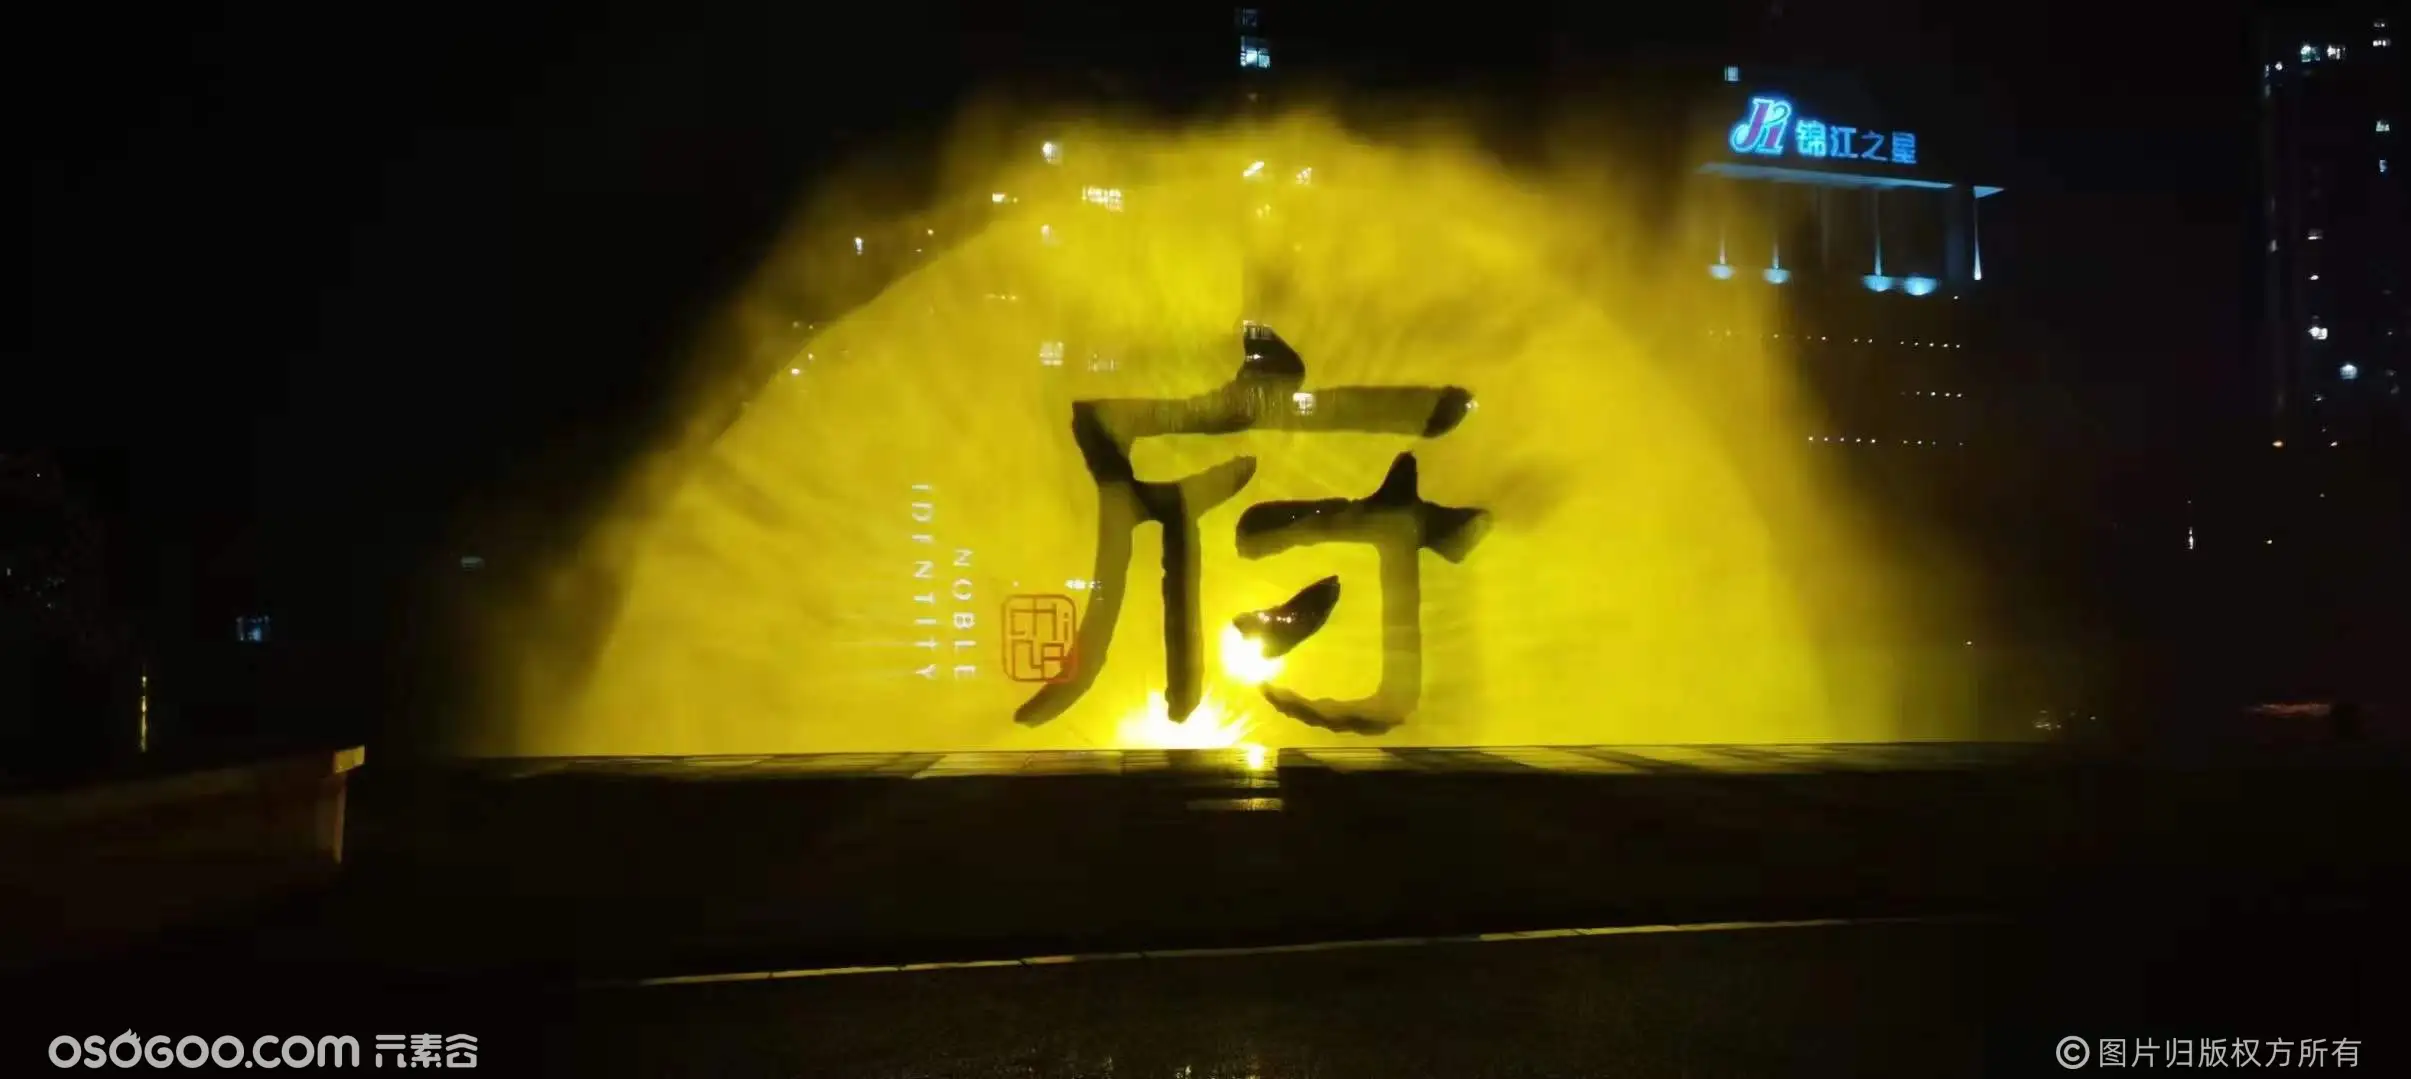 国内优秀水幕电影音乐喷泉供应商，水幕投影科技视觉秀中国领先者